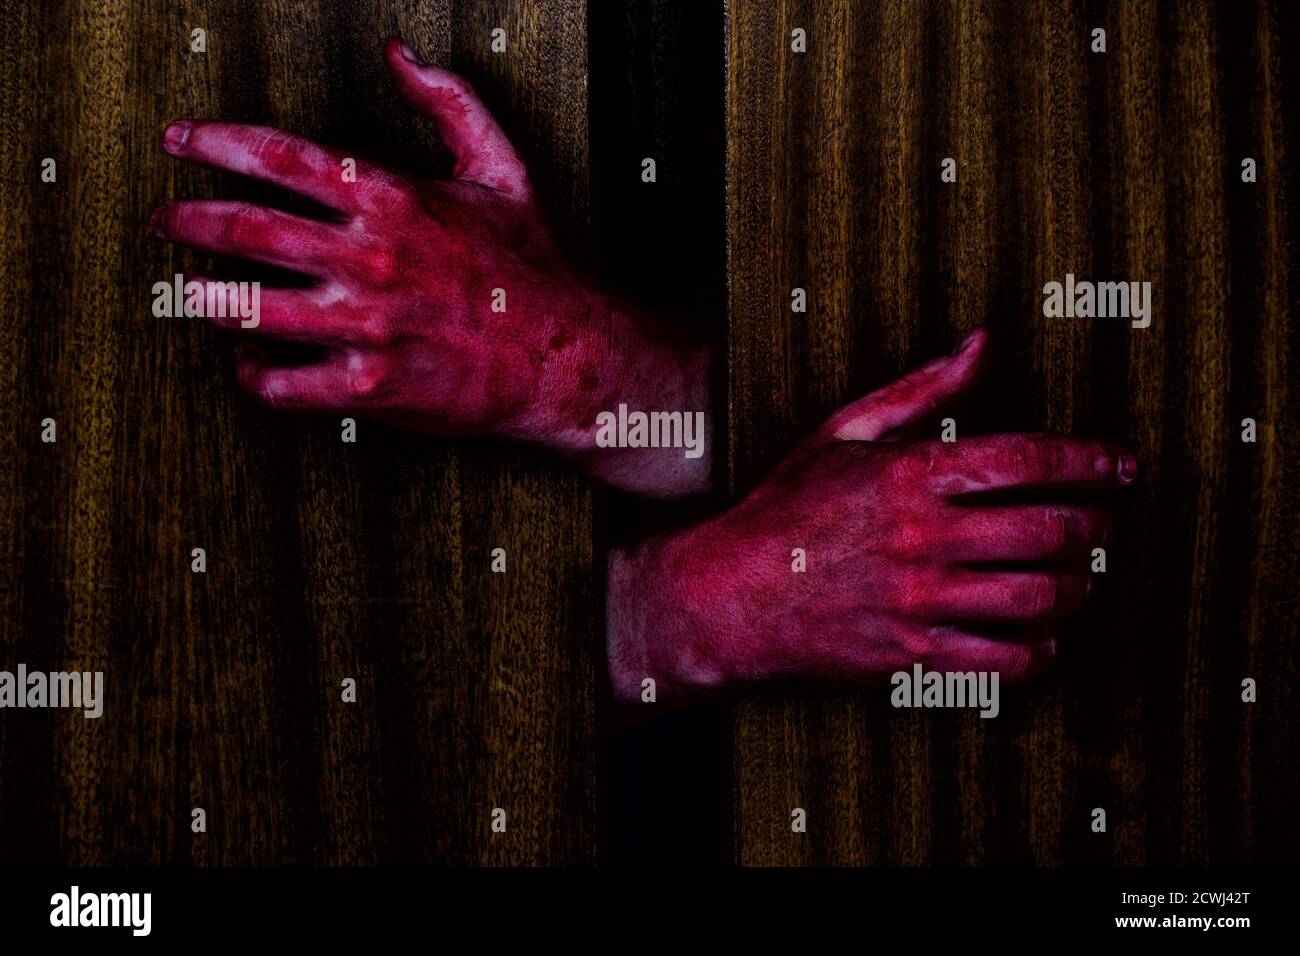 Deux mains sanglantes essayant de sortir d'un placard sombre. Banque D'Images